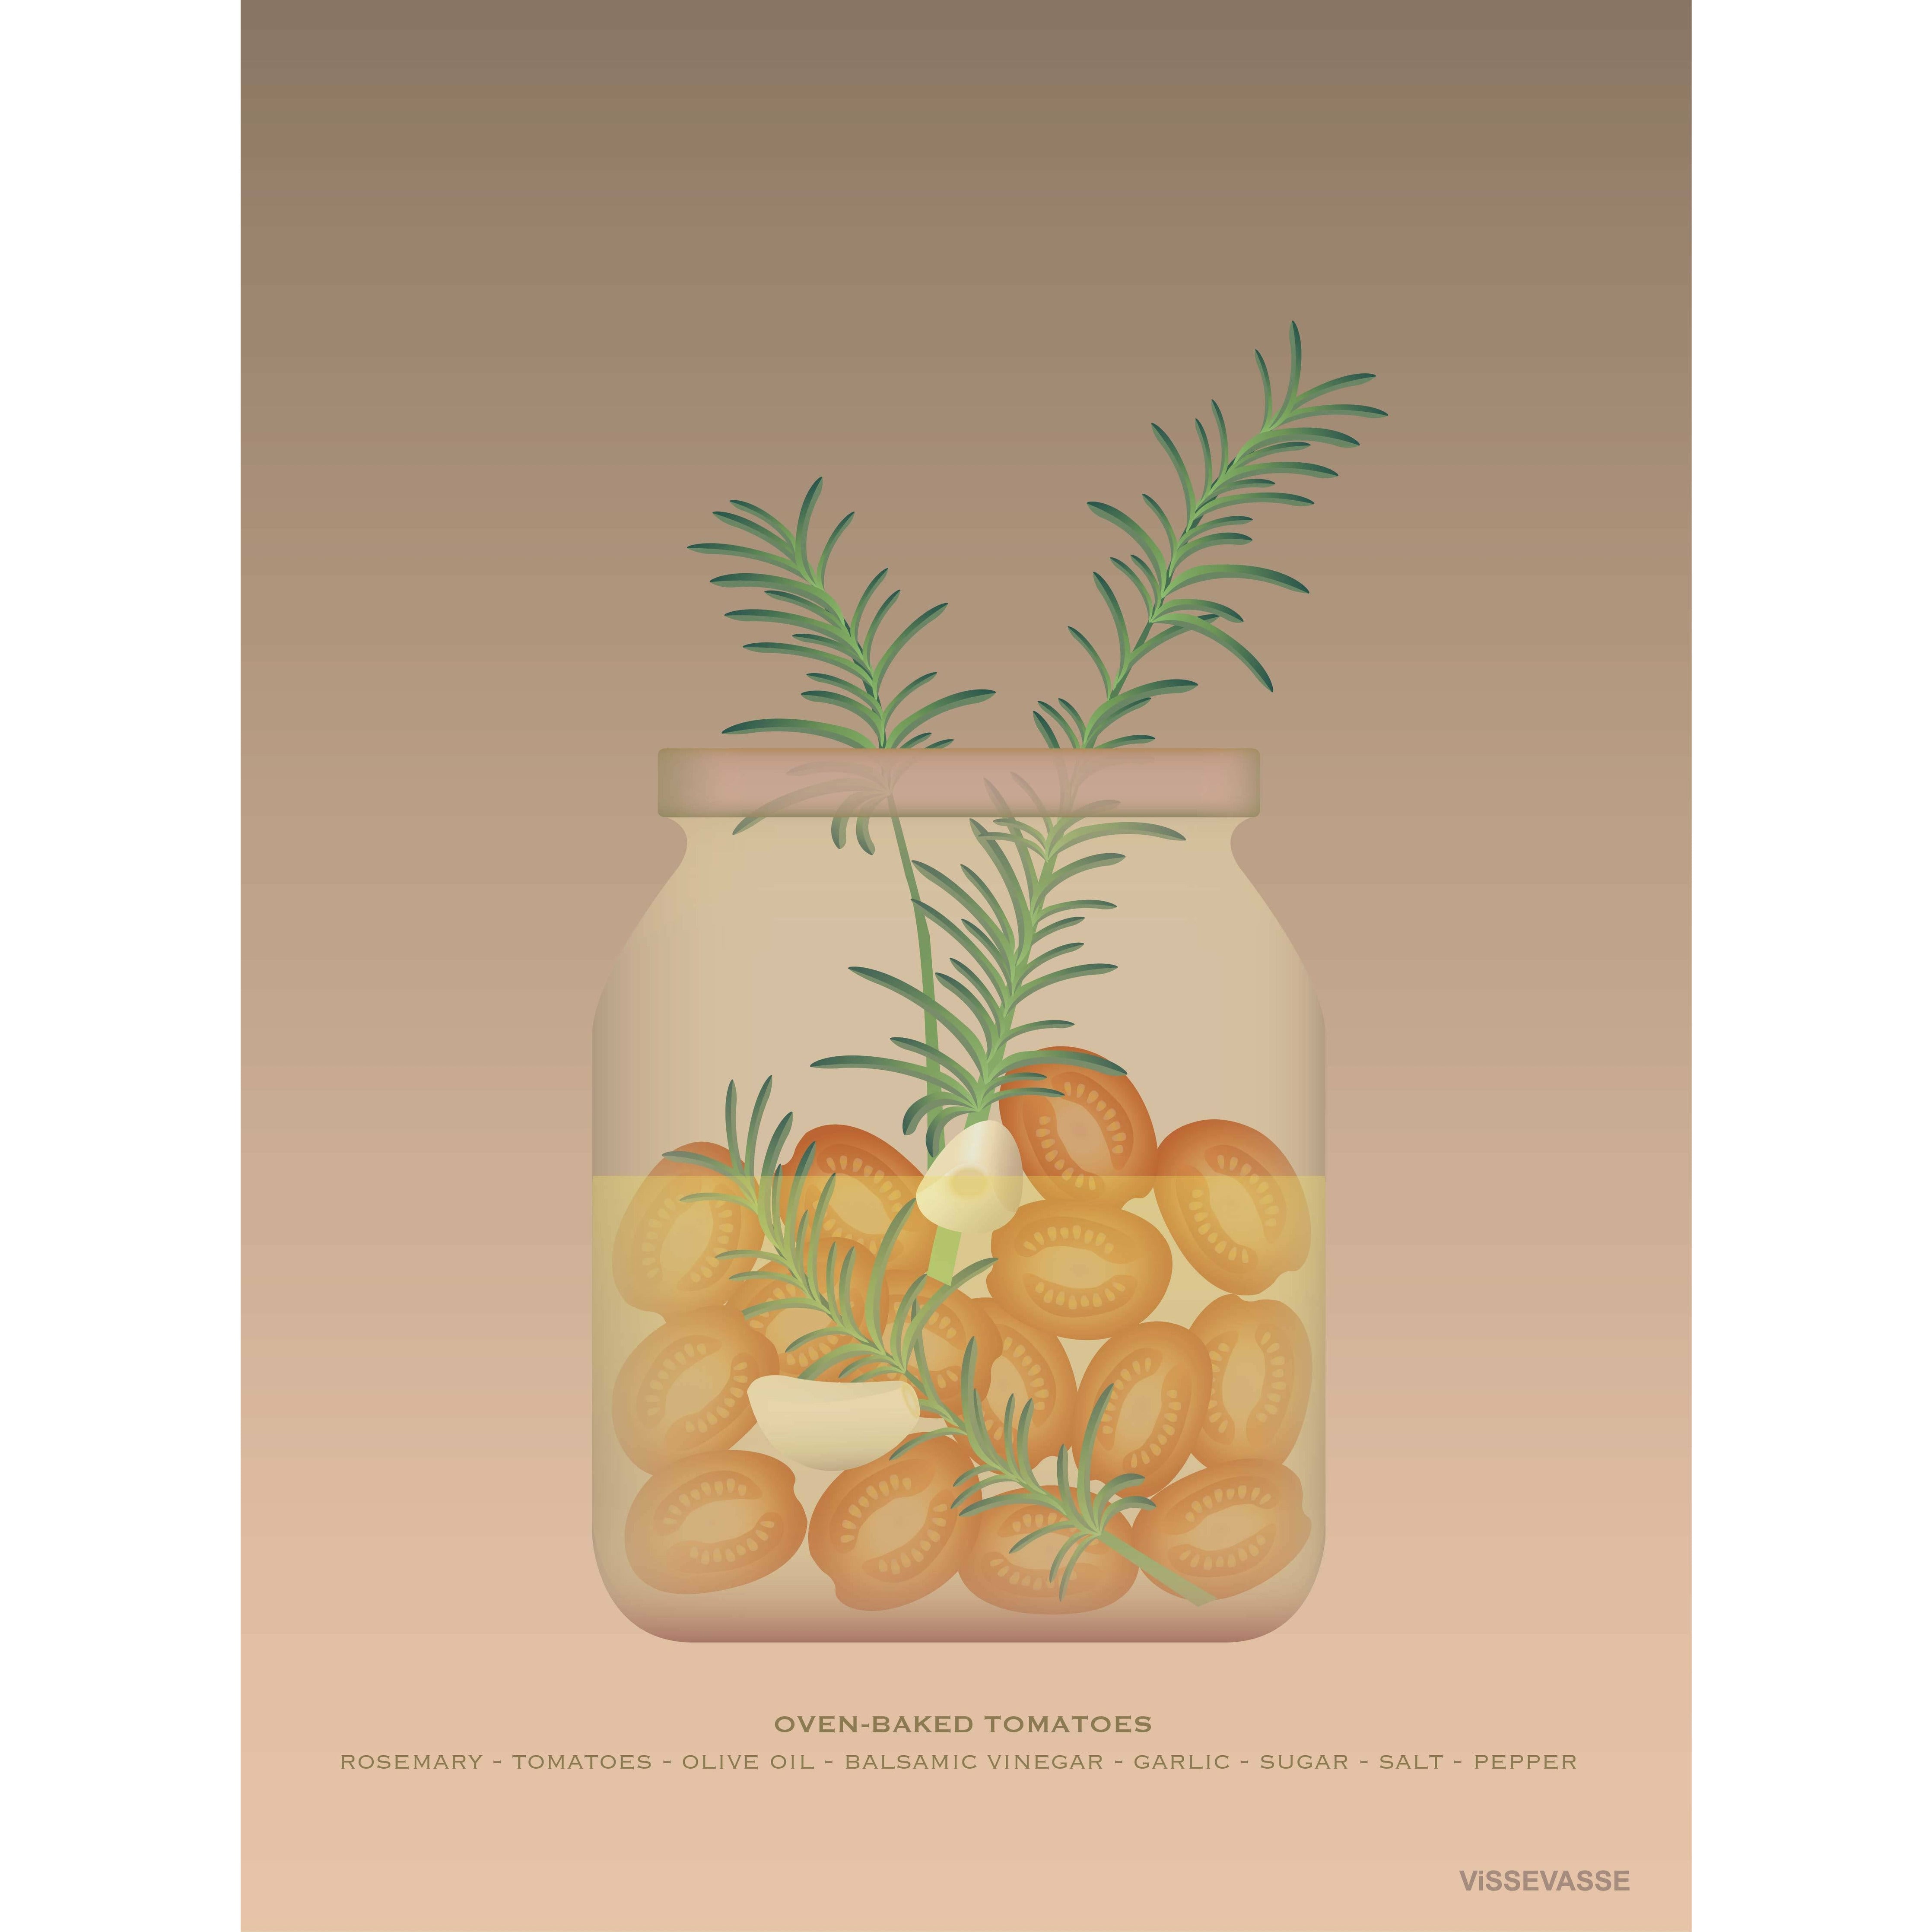 Vissevasse Ofengebackene Tomaten Poster, 50 X70 Cm